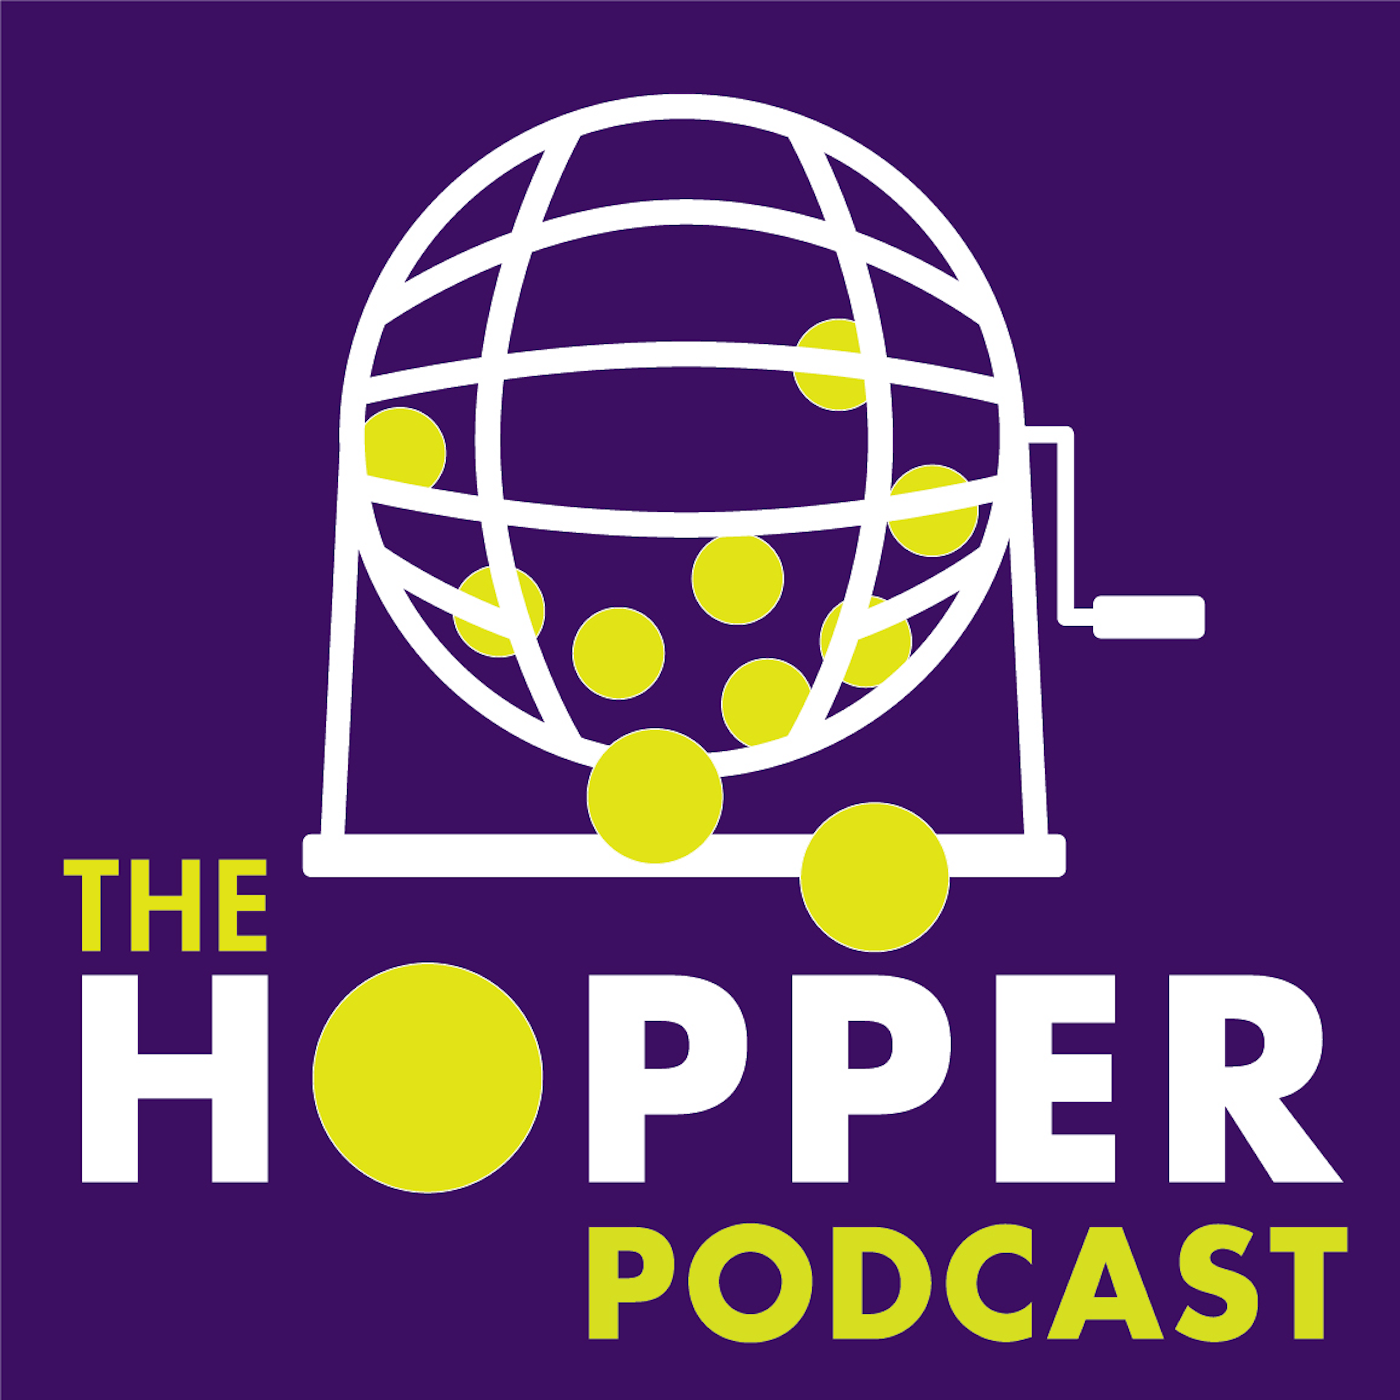 Artwork for podcast The Hopper Podcast